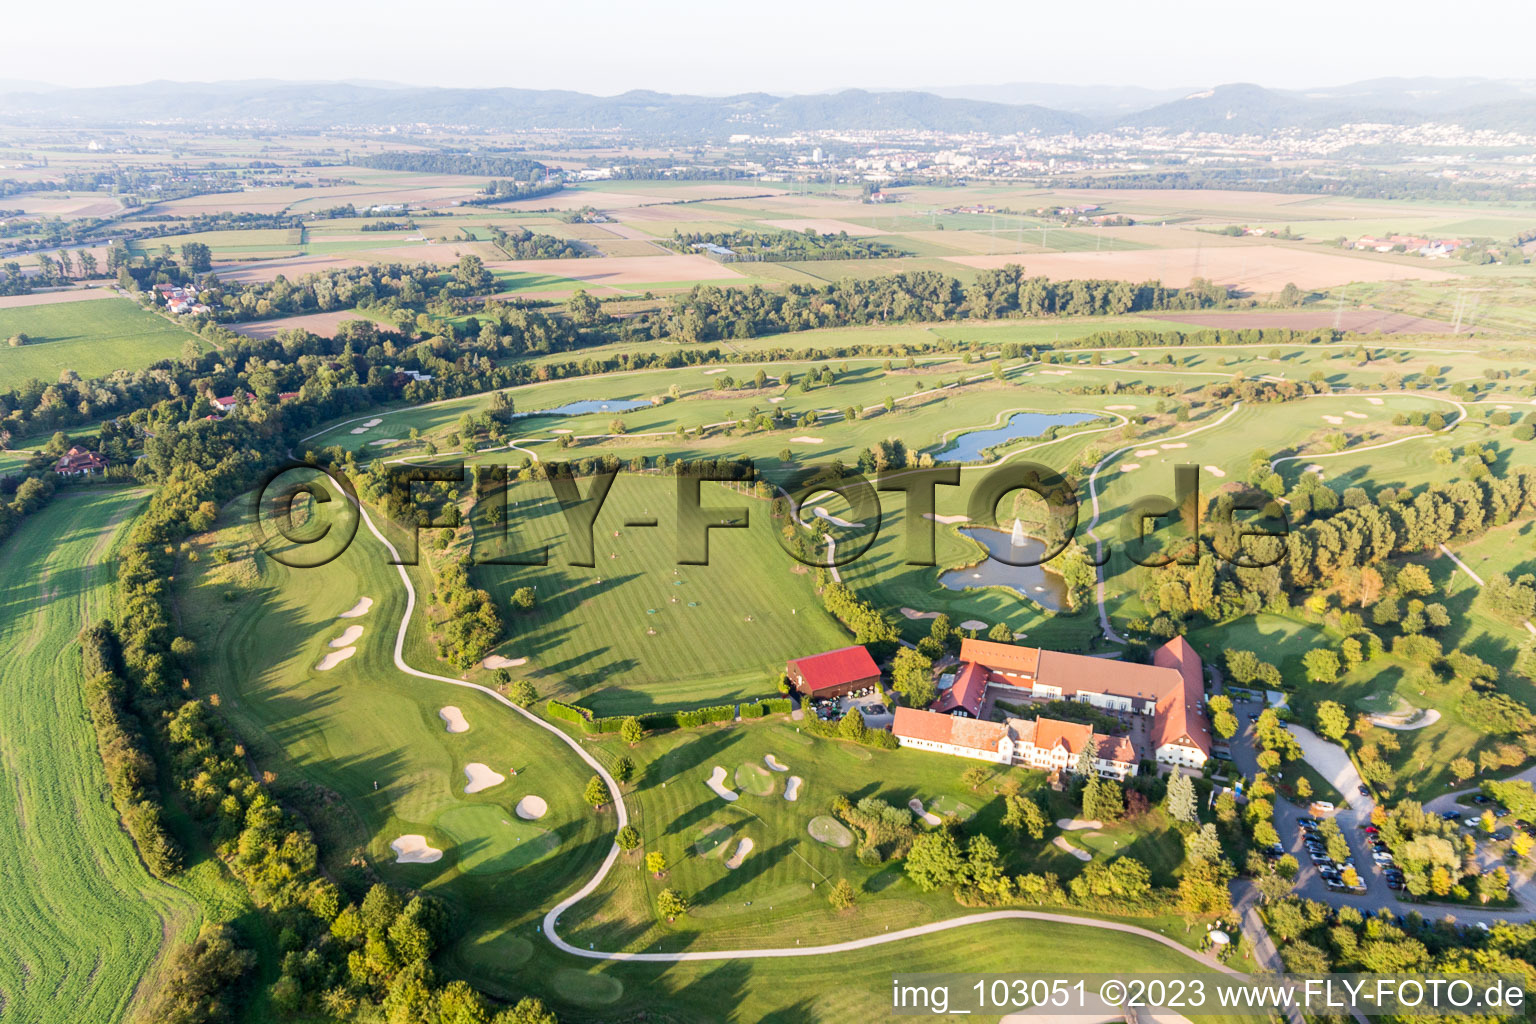 Golf course Heddesheim Gut Neuzenhof in Heddesheim in the state Baden-Wuerttemberg, Germany